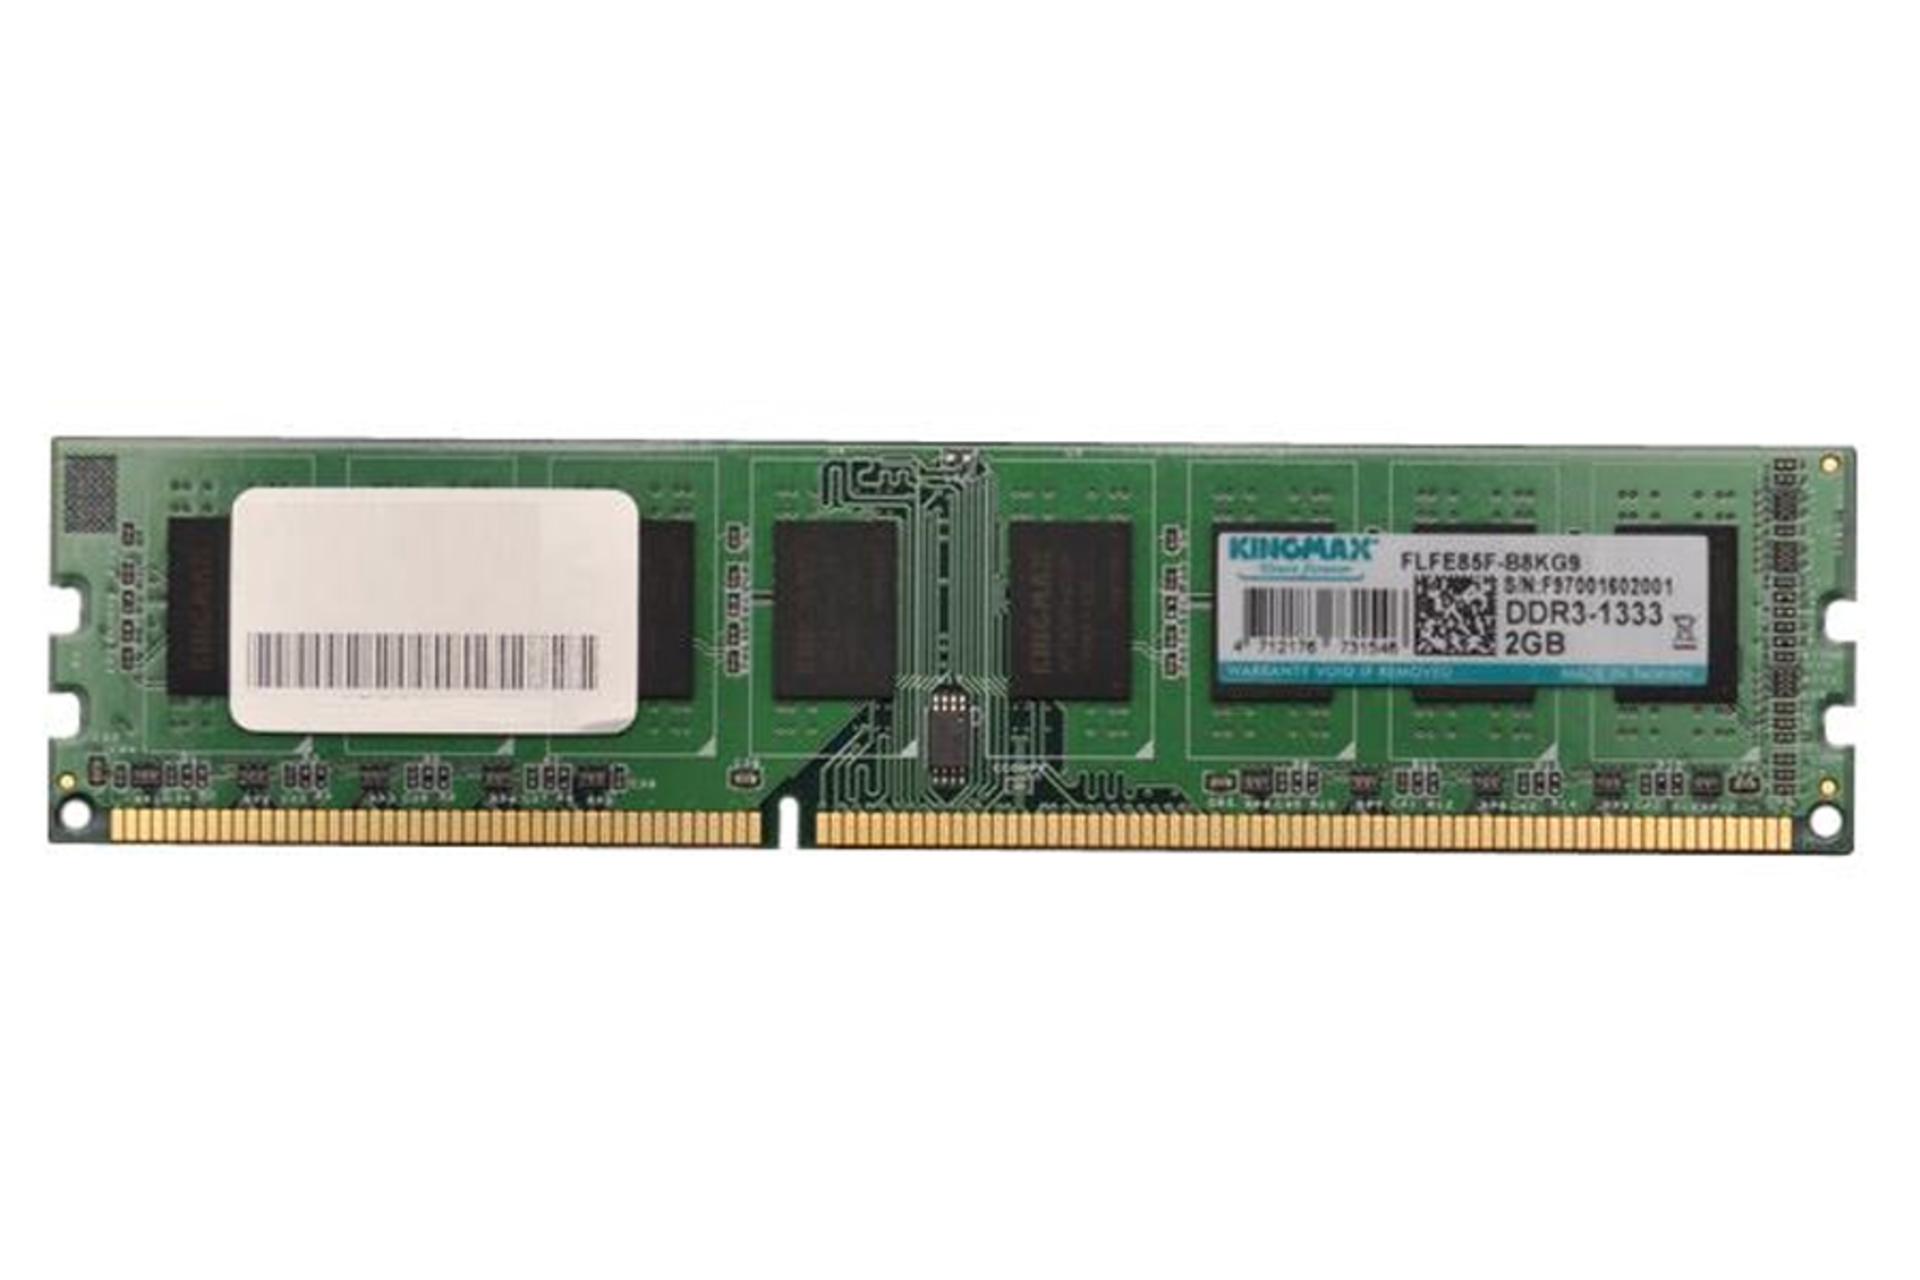 رم کینگ مکس دسکتاپ ظرفیت 2 گیگابایت از نوع DDR3-1333